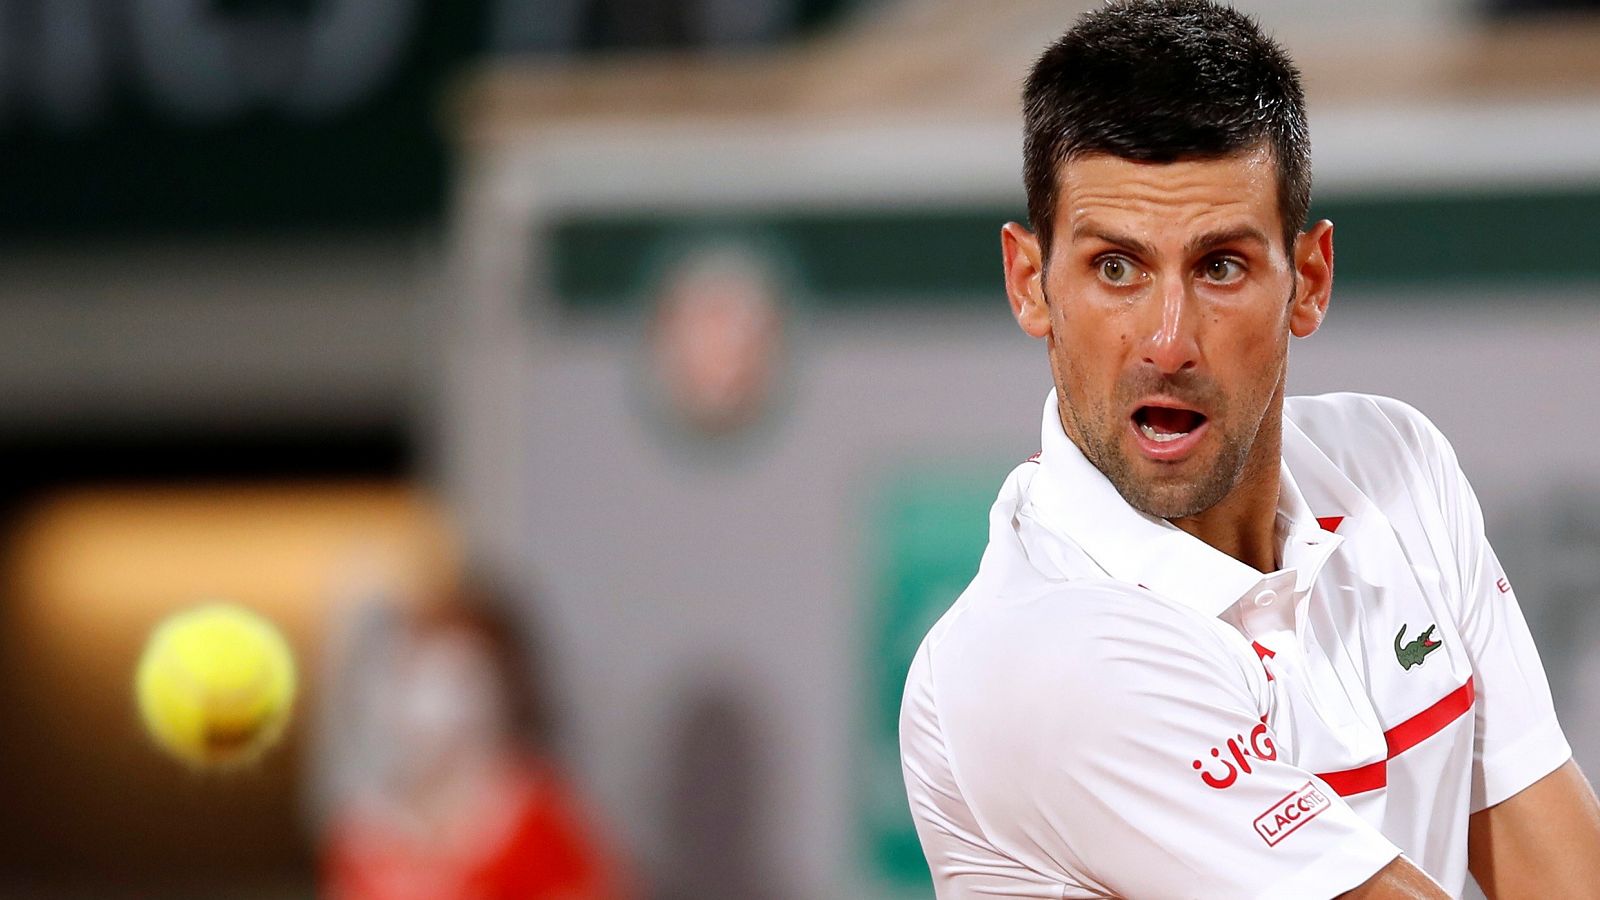 El tenista serbio Novak Djokovic durante su partido ante el sueco Mikael Ymer en Roland Garros.